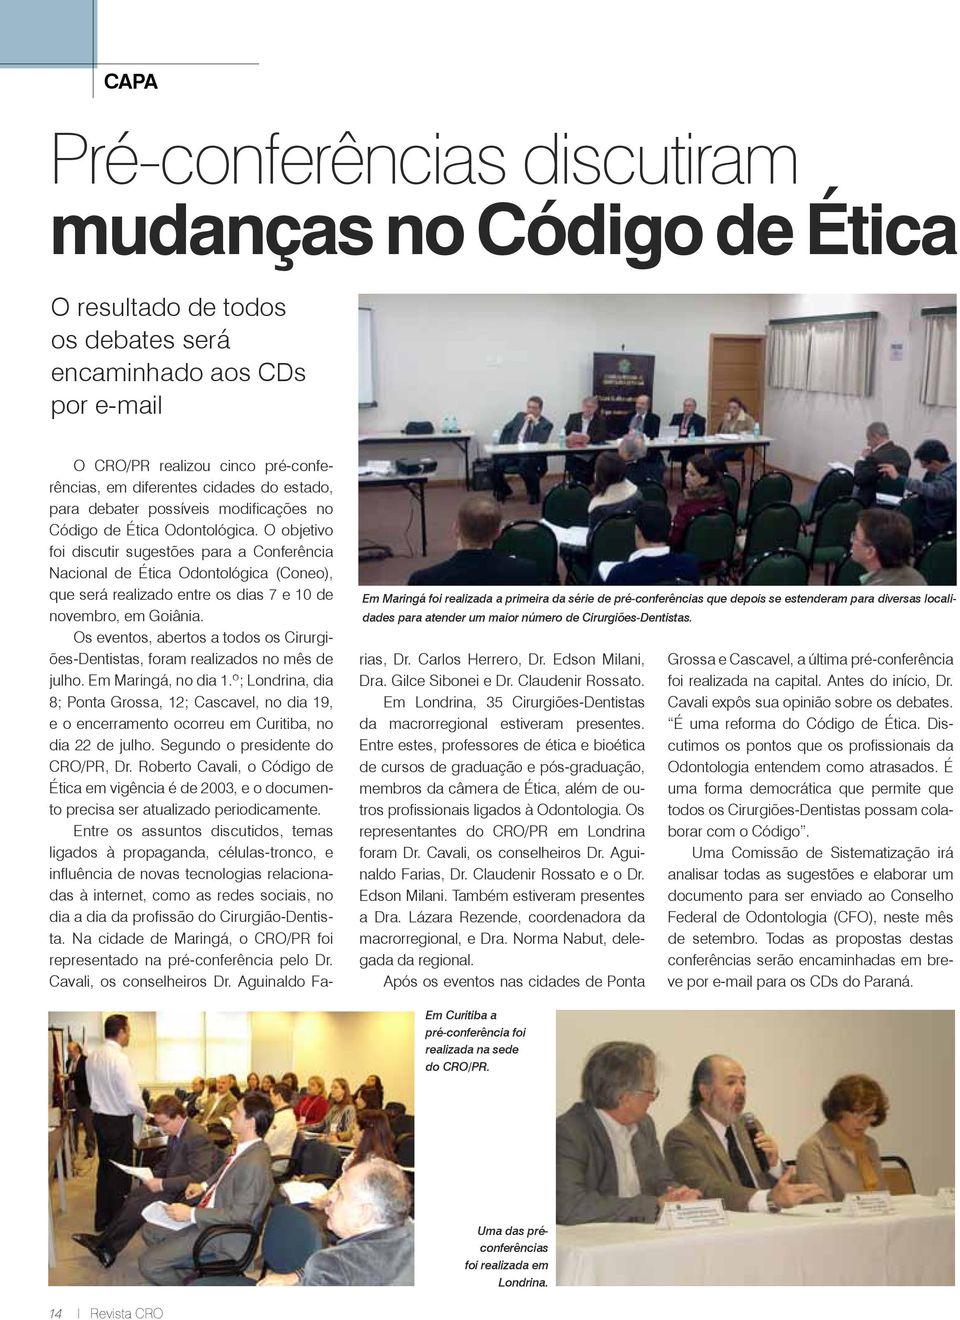 O objetivo foi discutir sugestões para a Conferência Nacional de Ética Odontológica (Coneo), que será realizado entre os dias 7 e 10 de novembro, em Goiânia.